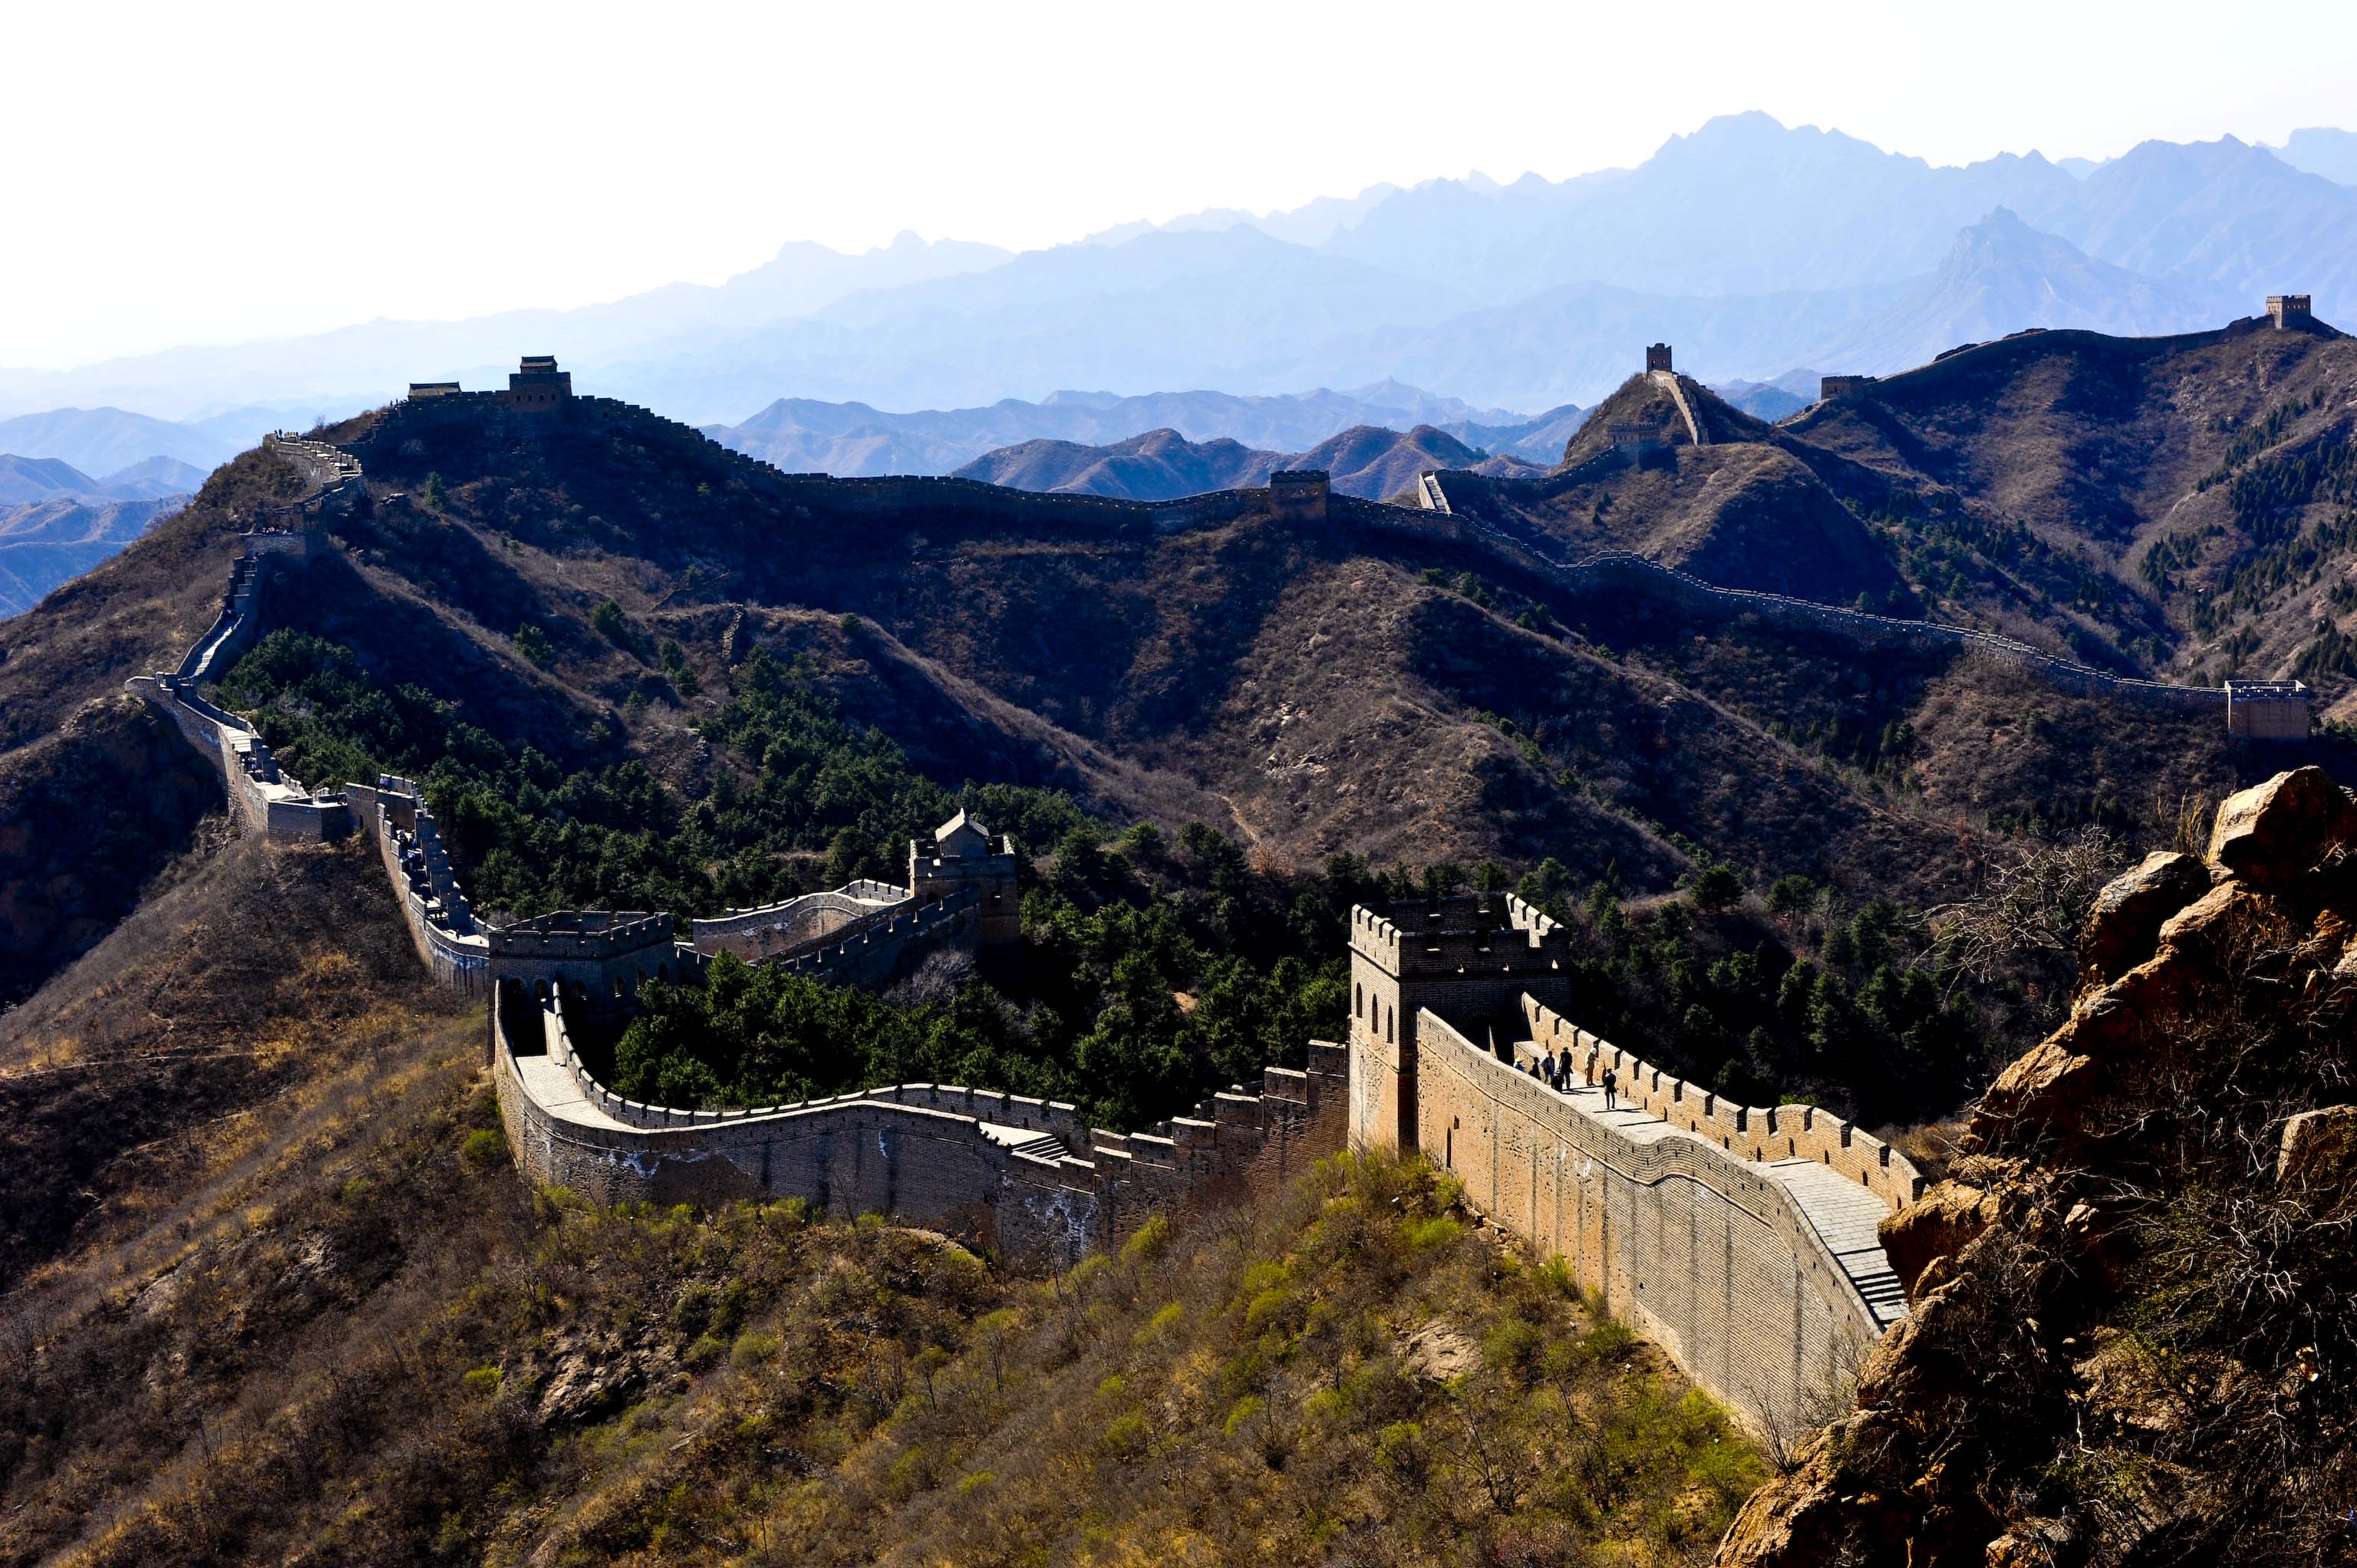 Jinshanling Great Wall Day Tour